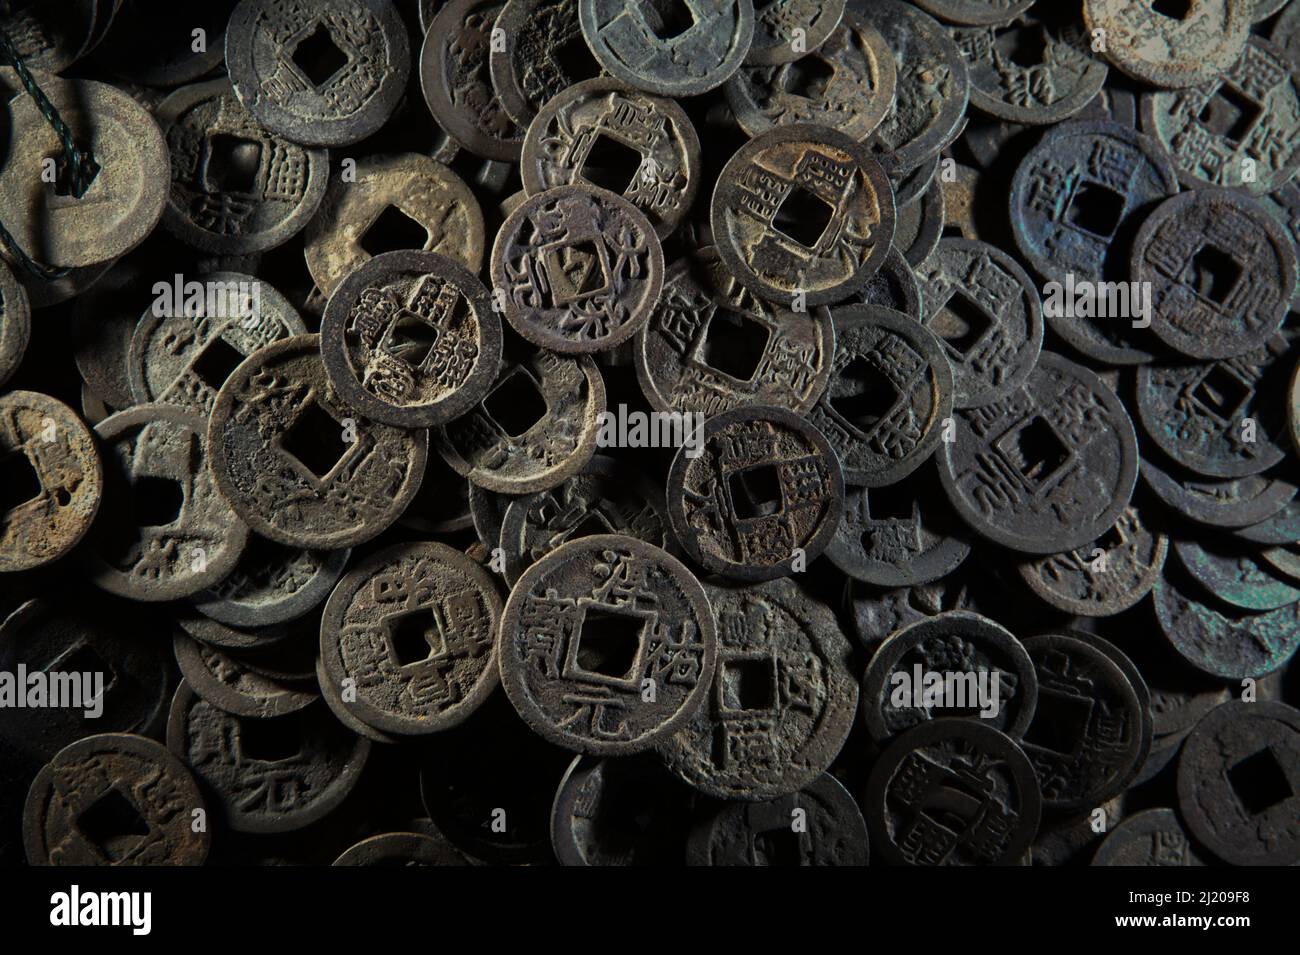 Antiche monete cinesi datate tra i 2th-13th secoli che sono raccolte da abitanti del villaggio che vivono nel delta del fiume Batanghari a Jambi, Indonesia. 'Il maggior numero di monete proviene dall'epoca dell'imperatore li Yuan (618-626 d.C.) della dinastia Tang, seguito da monete emesse da Shen Tsung (1067-1085) della dinastia Song,' ha detto Roy Mardianto, il collezionista che possiede queste monete in Jambi. Gli antichi record cinesi hanno informato che Srivijaya non ha emesso le proprie monete. "Non hanno contante di rame a filo, ma usano grumi di argento tagliati fuori nelle loro transazioni di affari," ha scritto Chau Ju-kua (Zhao Rugua) Foto Stock